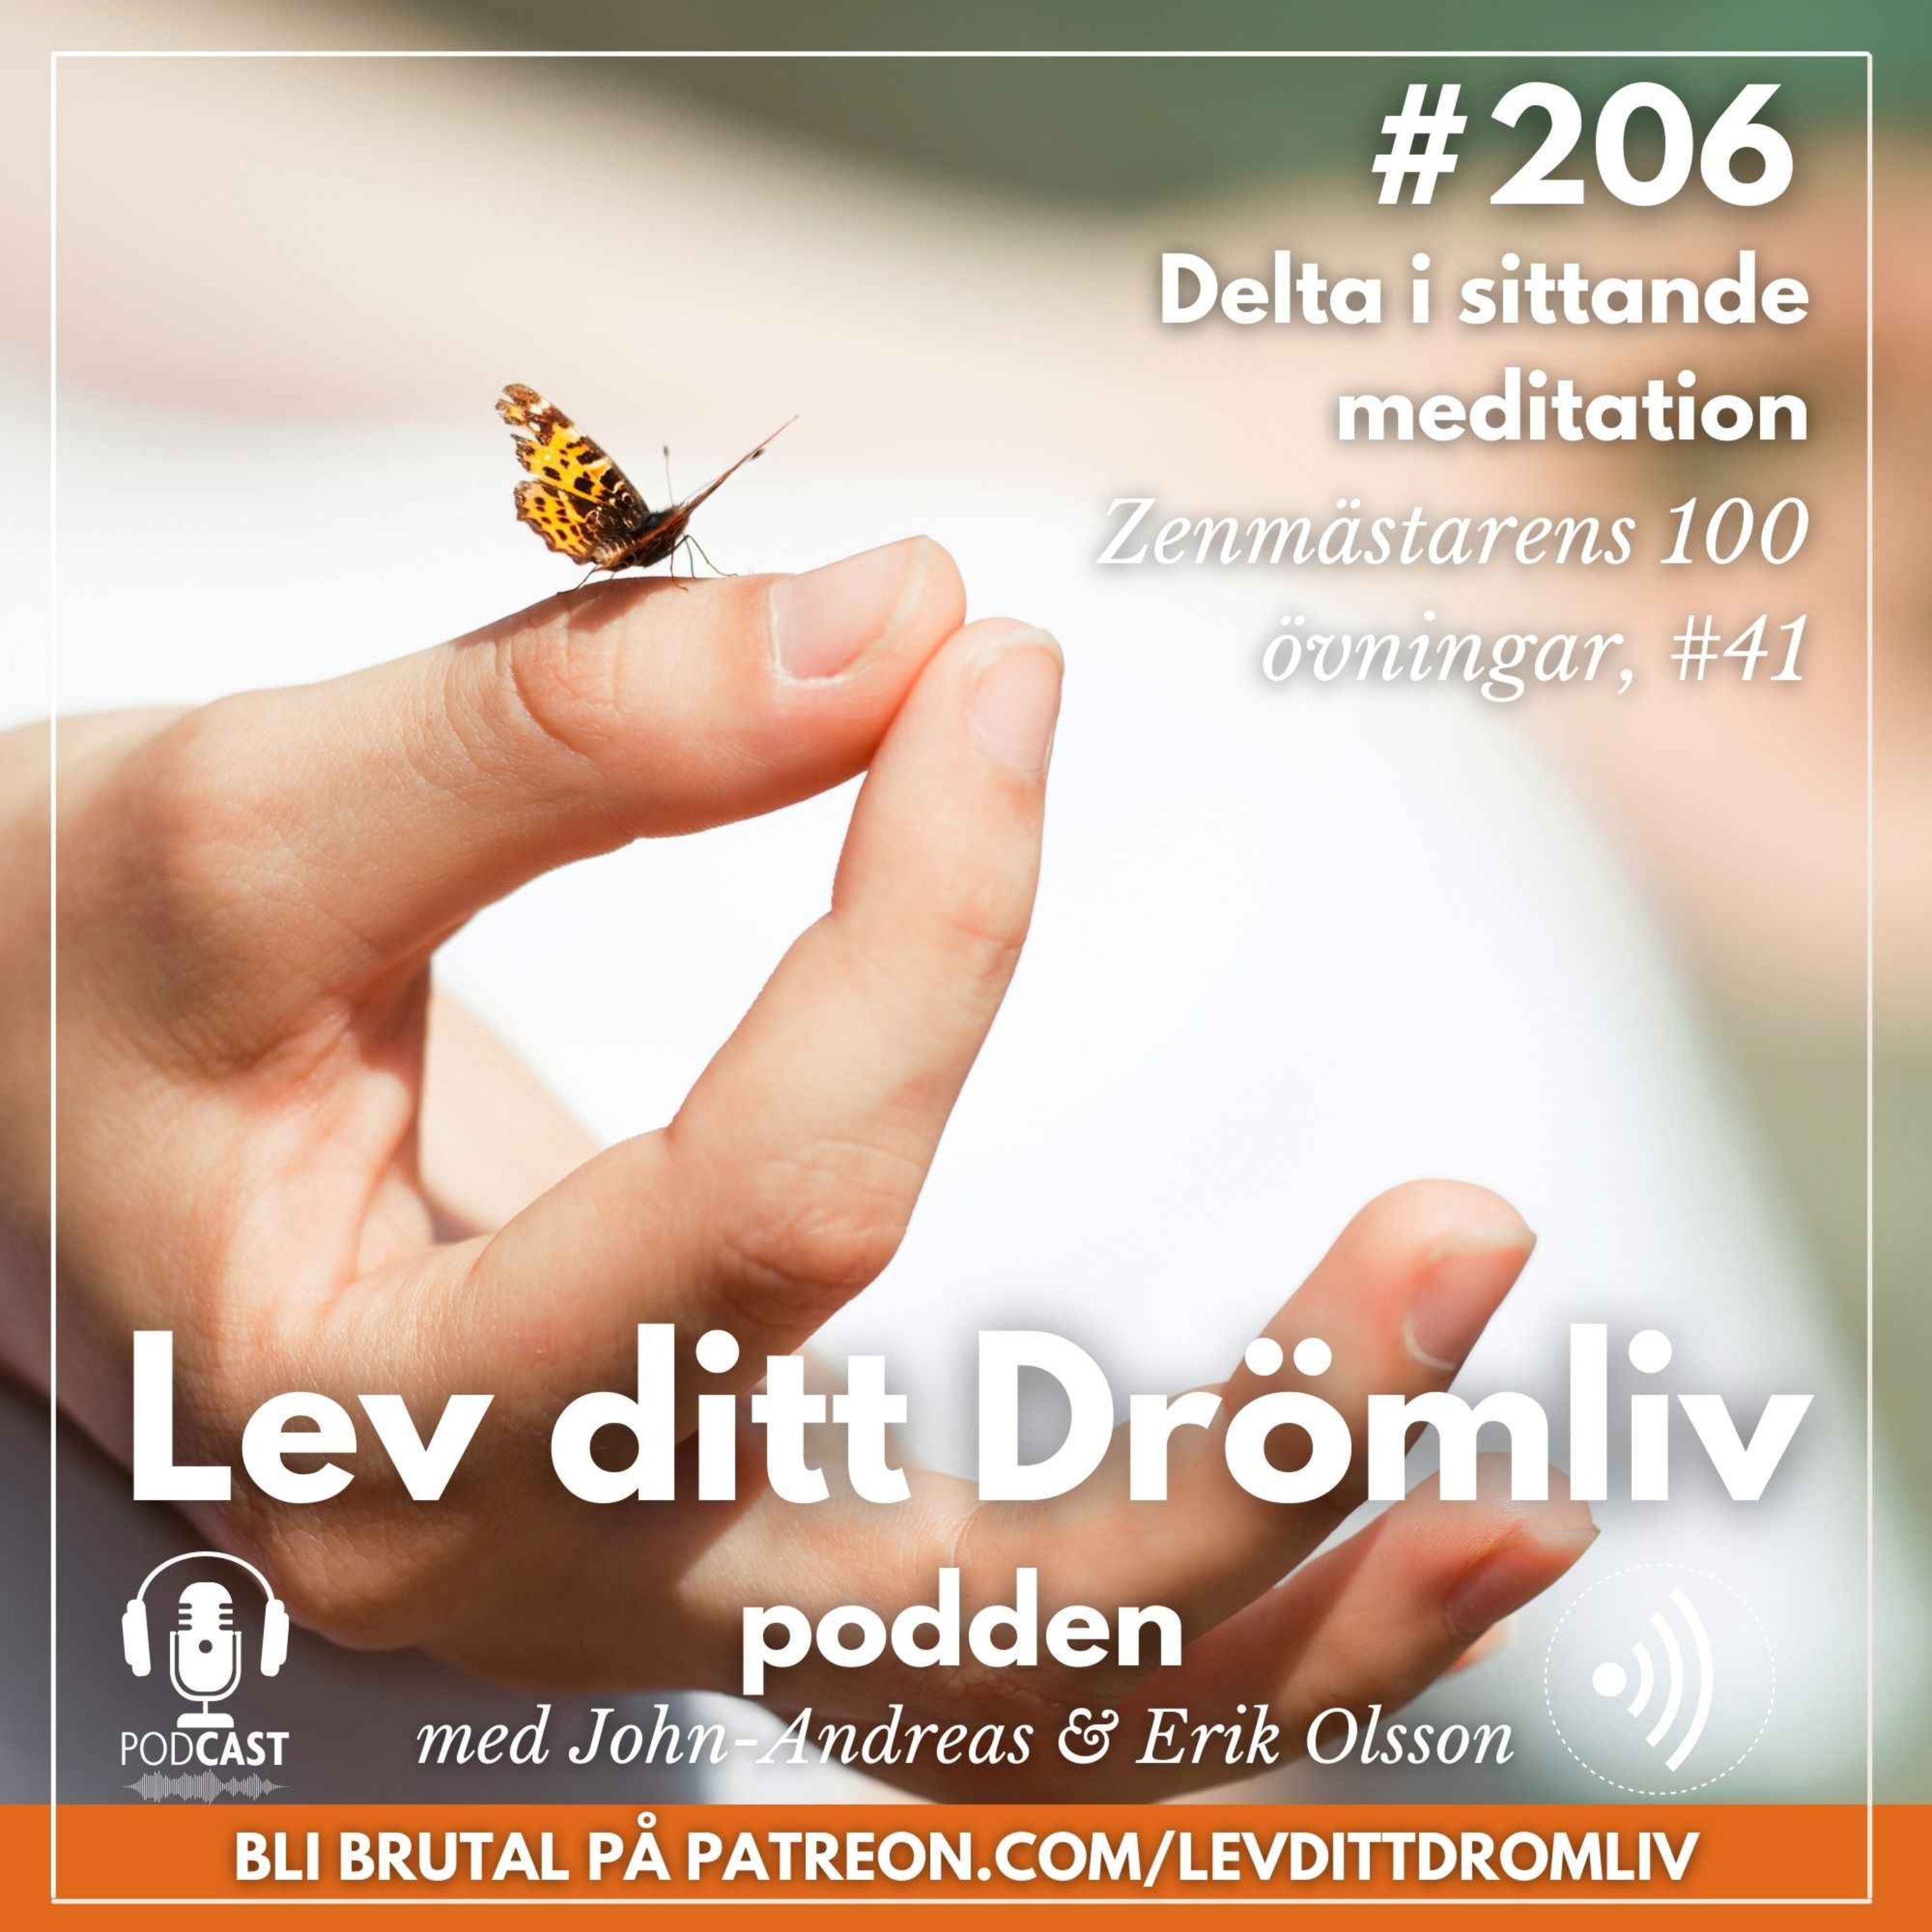 Avsnitt #206: Delta i sittande meditation